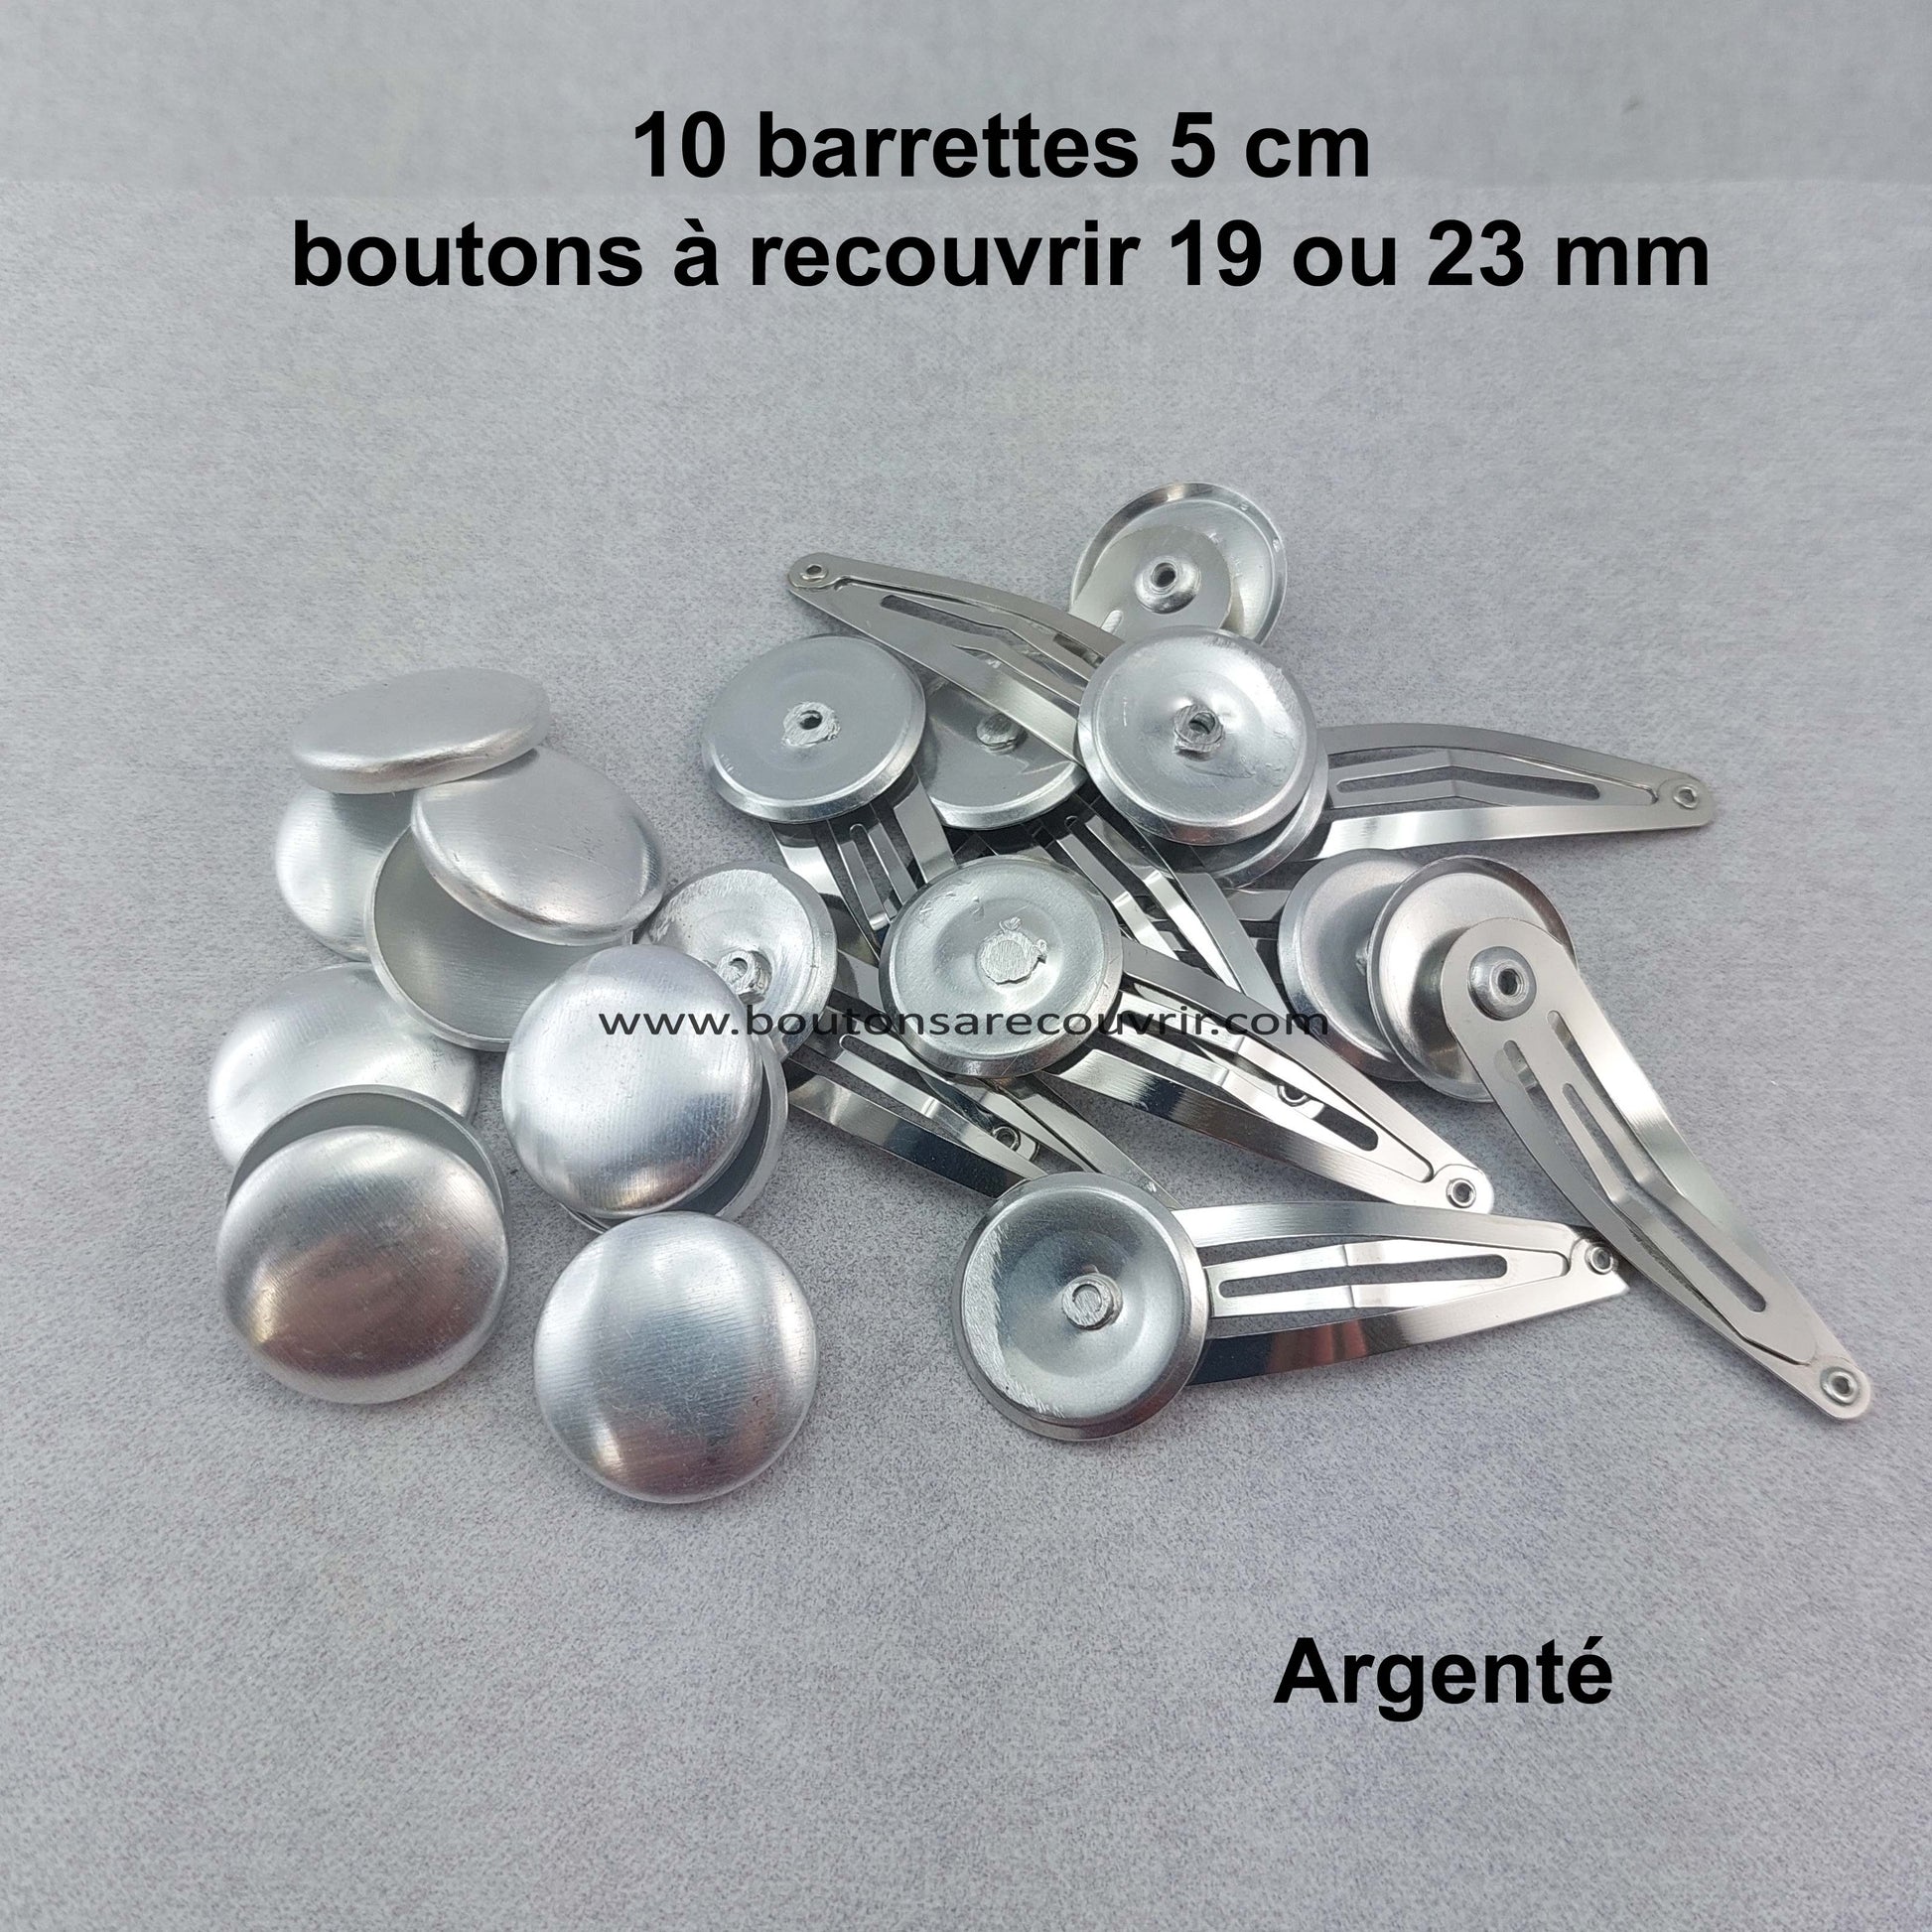 Barrettes - boutons à recouvrir 19 ou 23 mm personnalisables